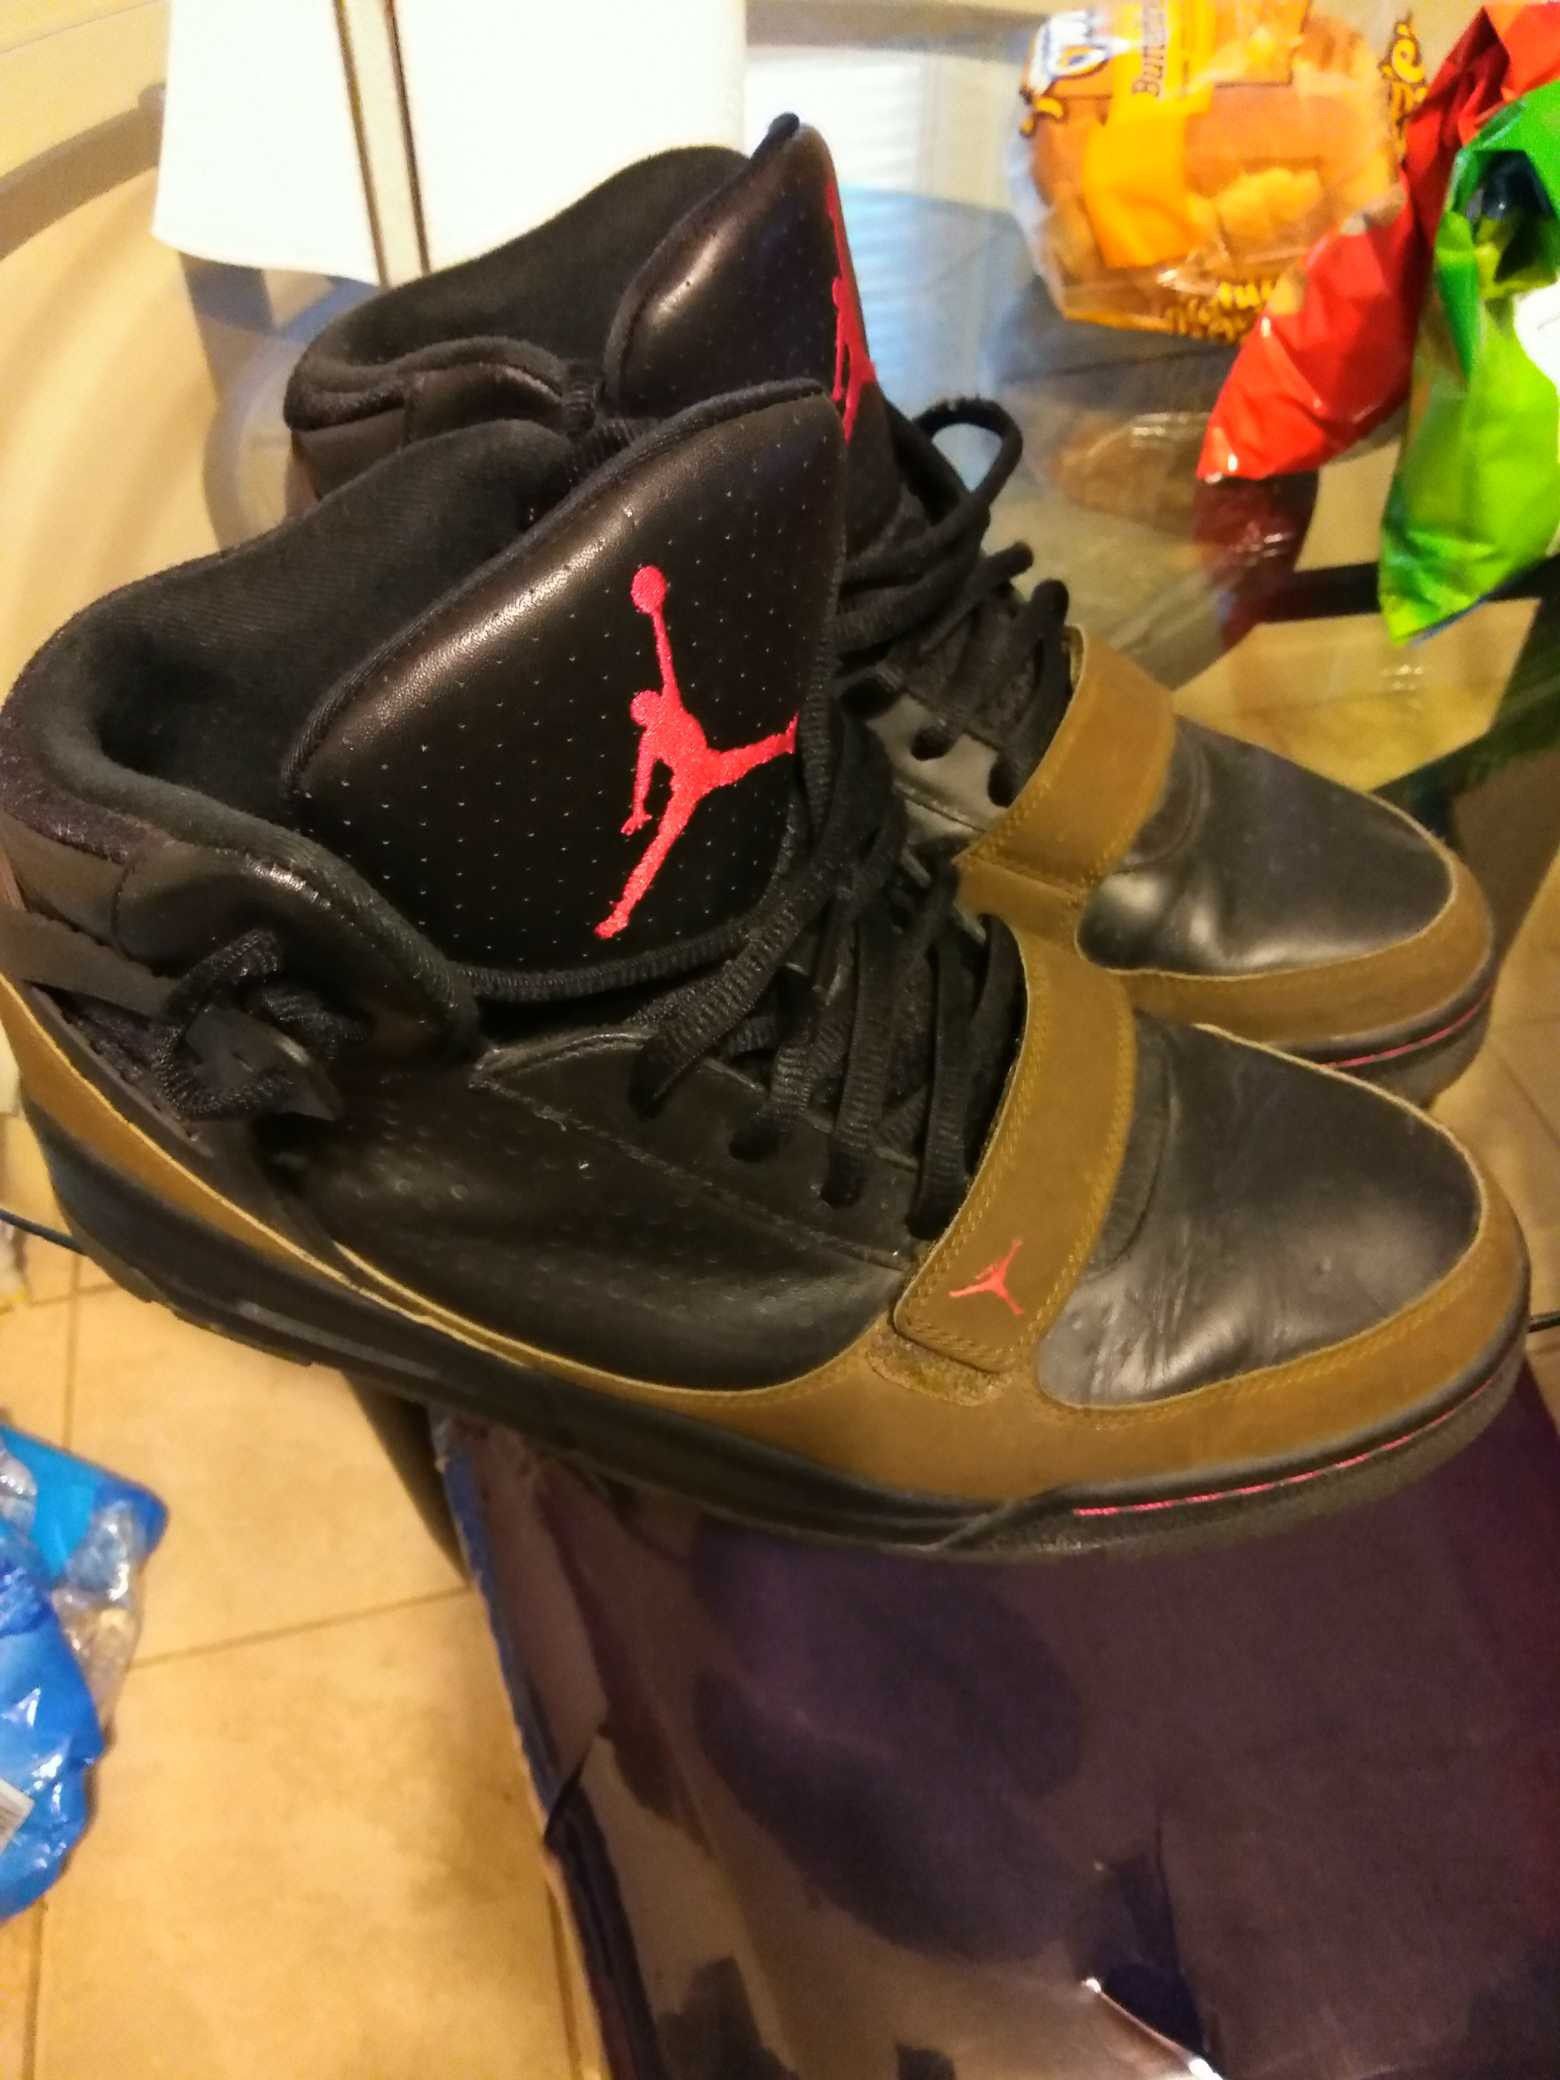 Jordan boots